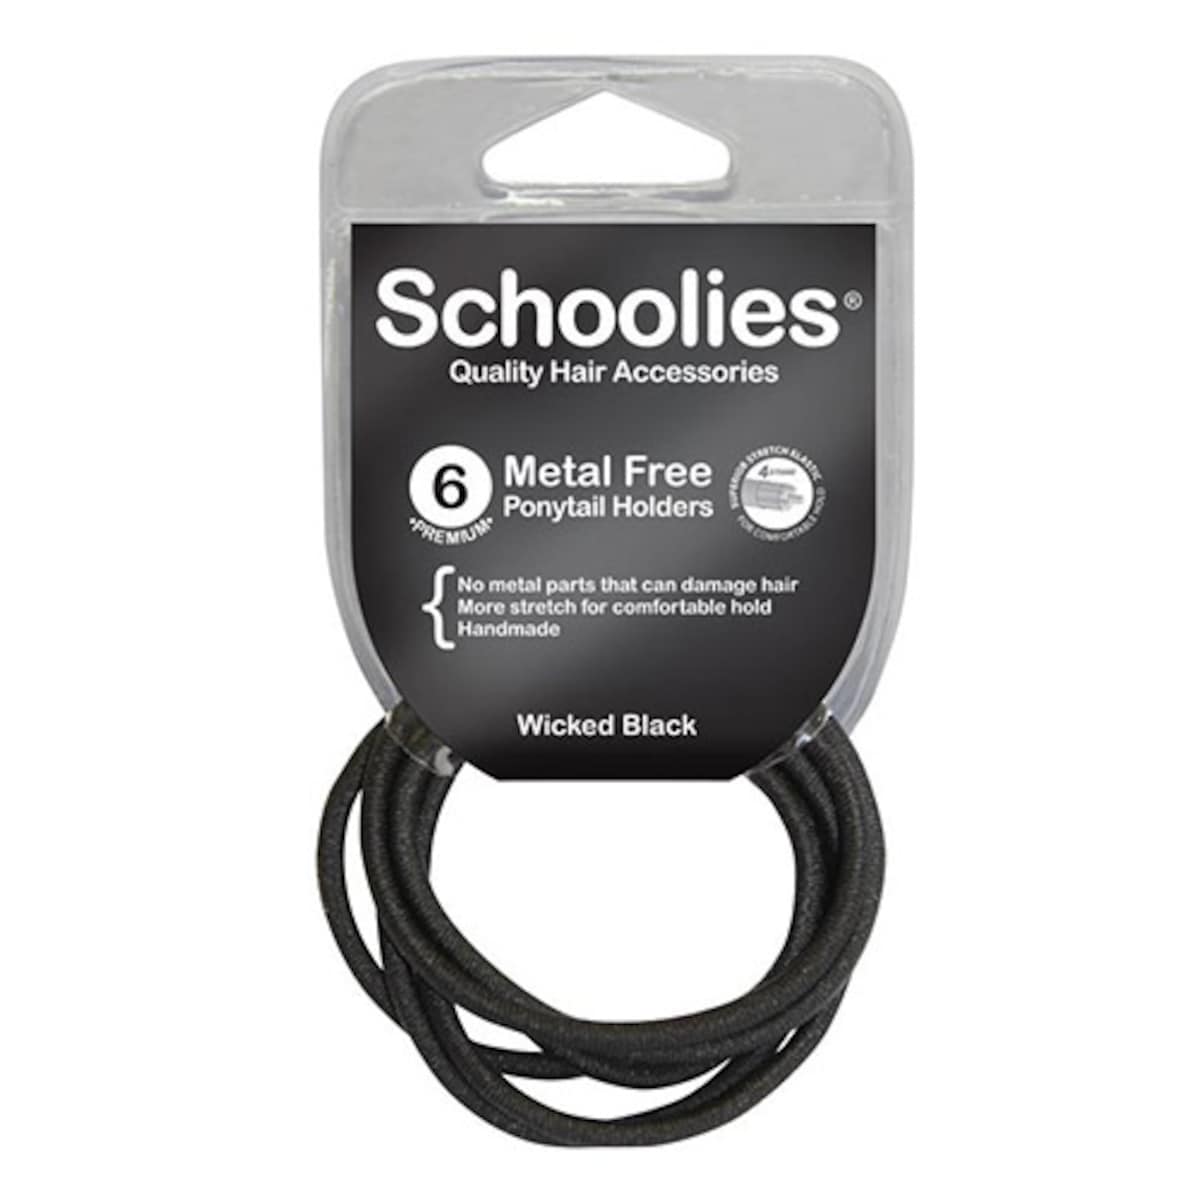 Schoolies #SC468 Metal Free Ponytail Holders Wicked Black 6 Pack